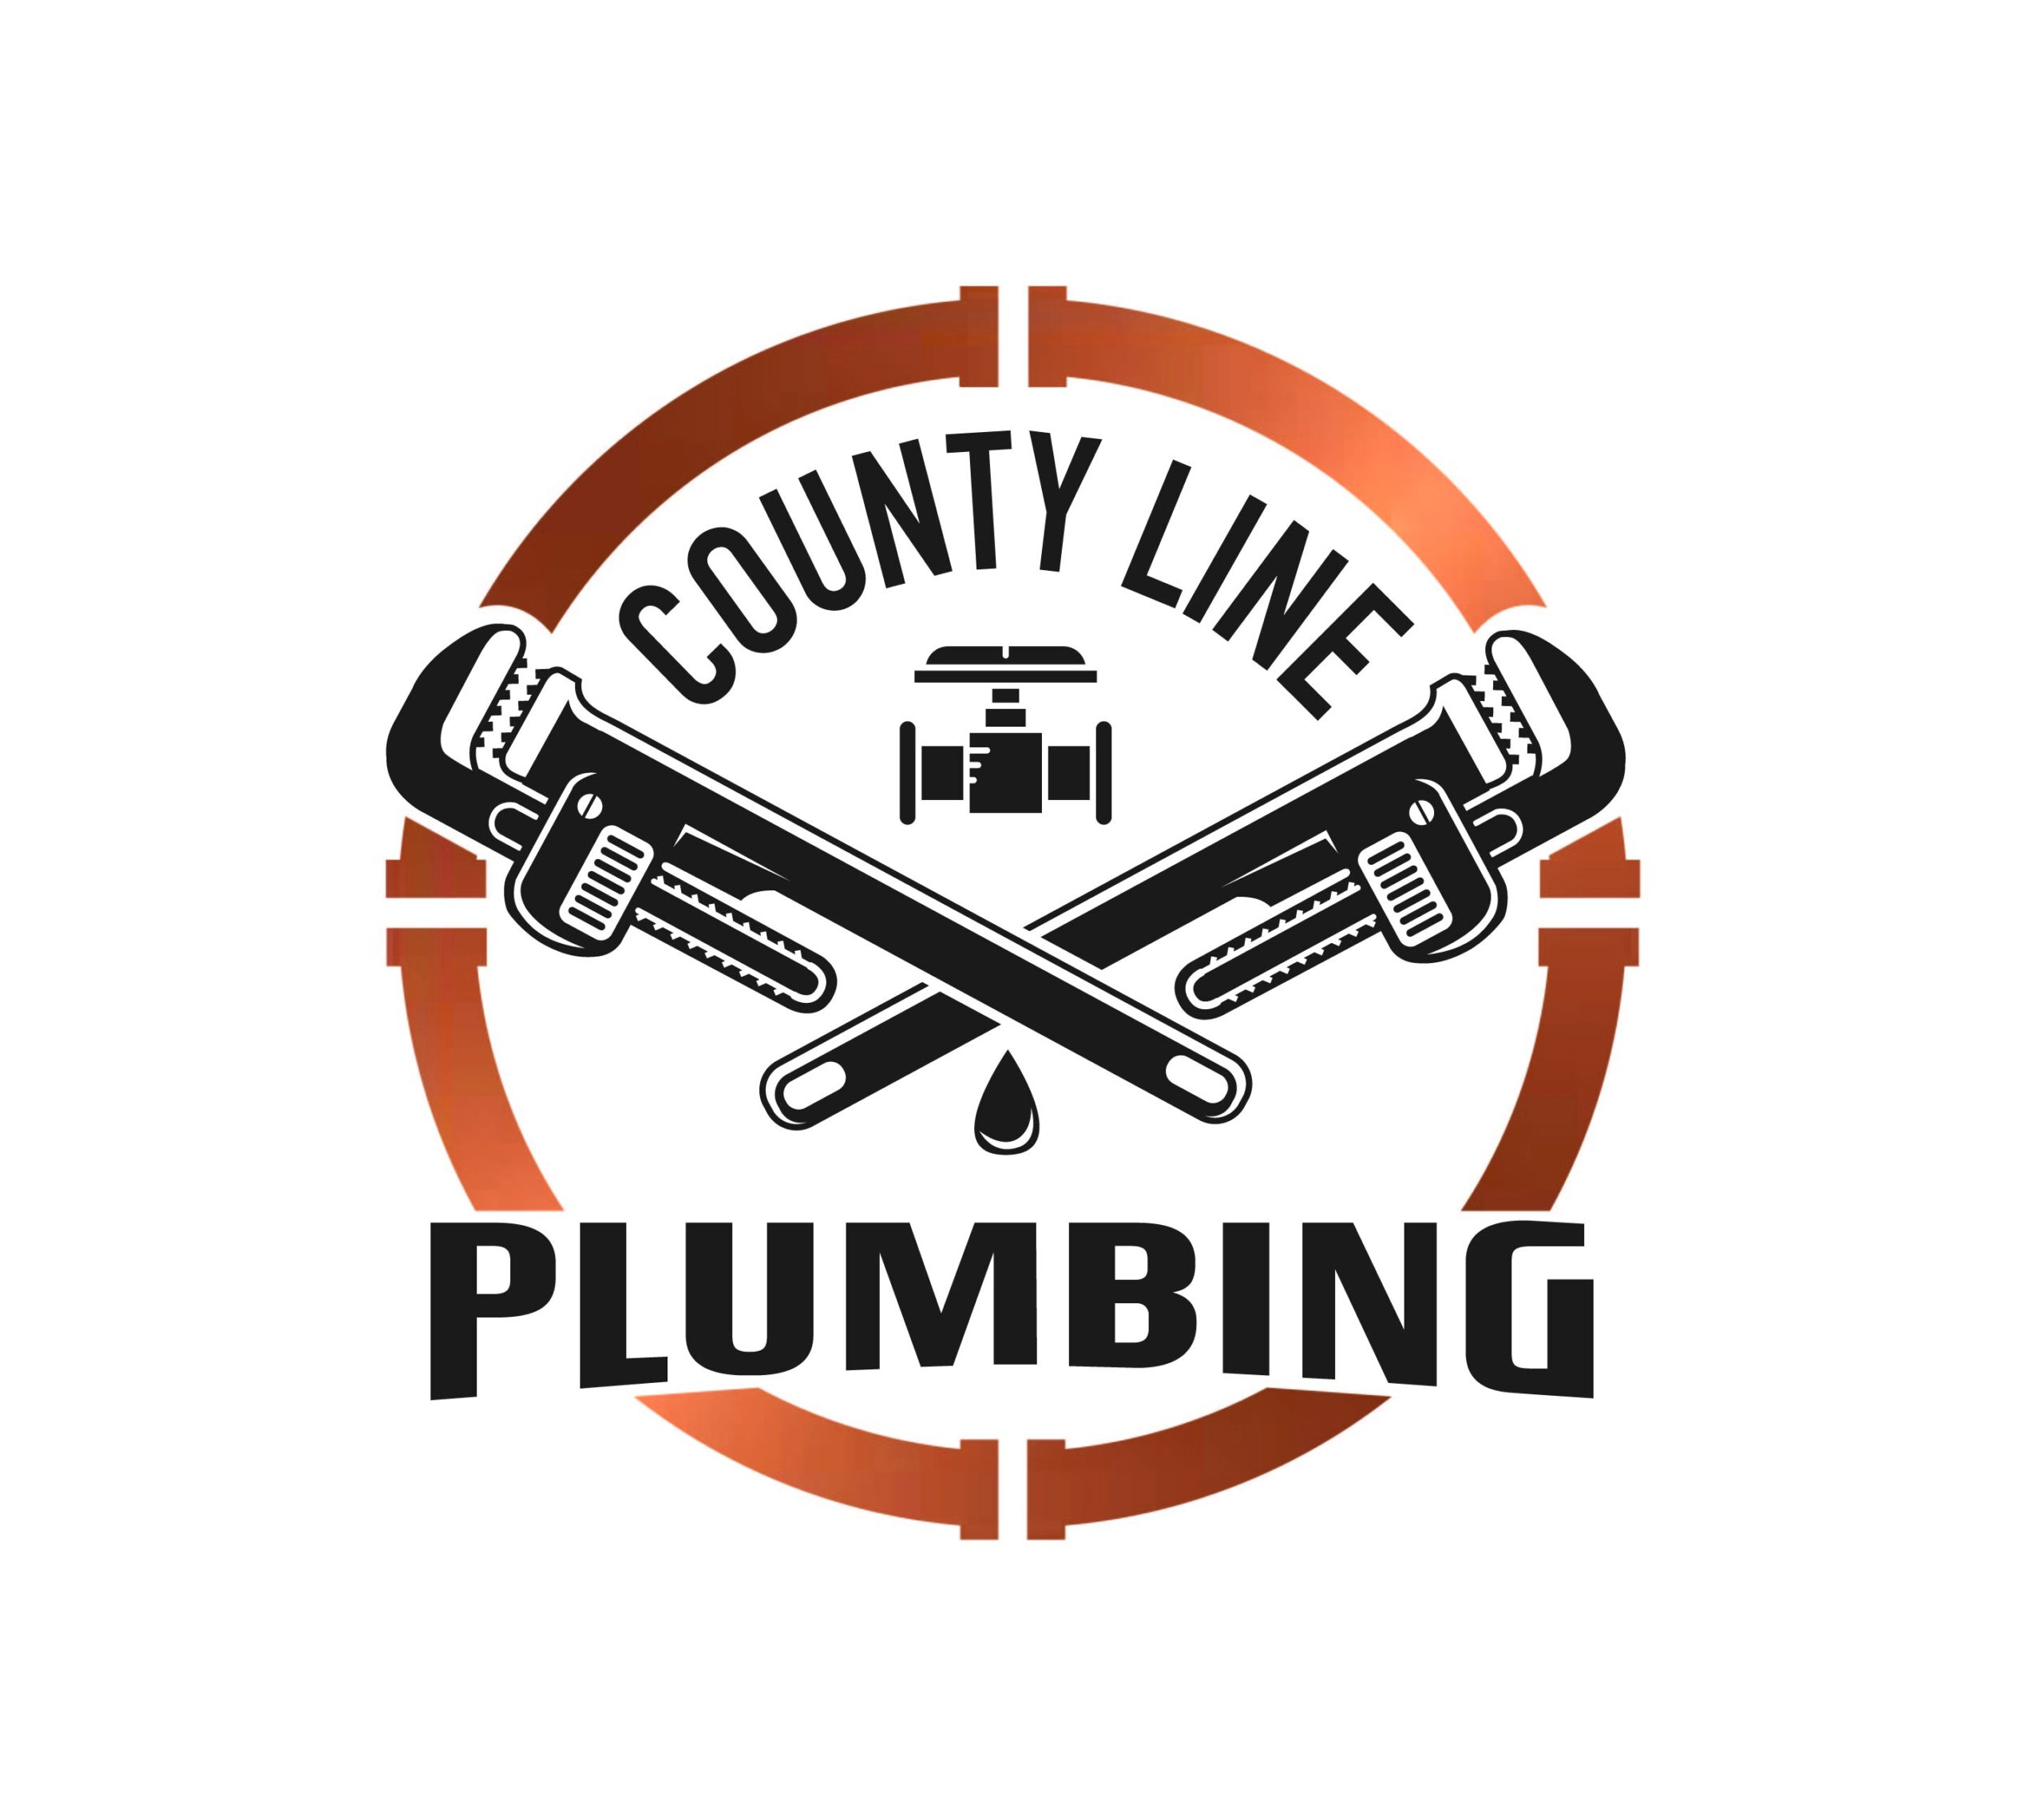 County Line Plumbing